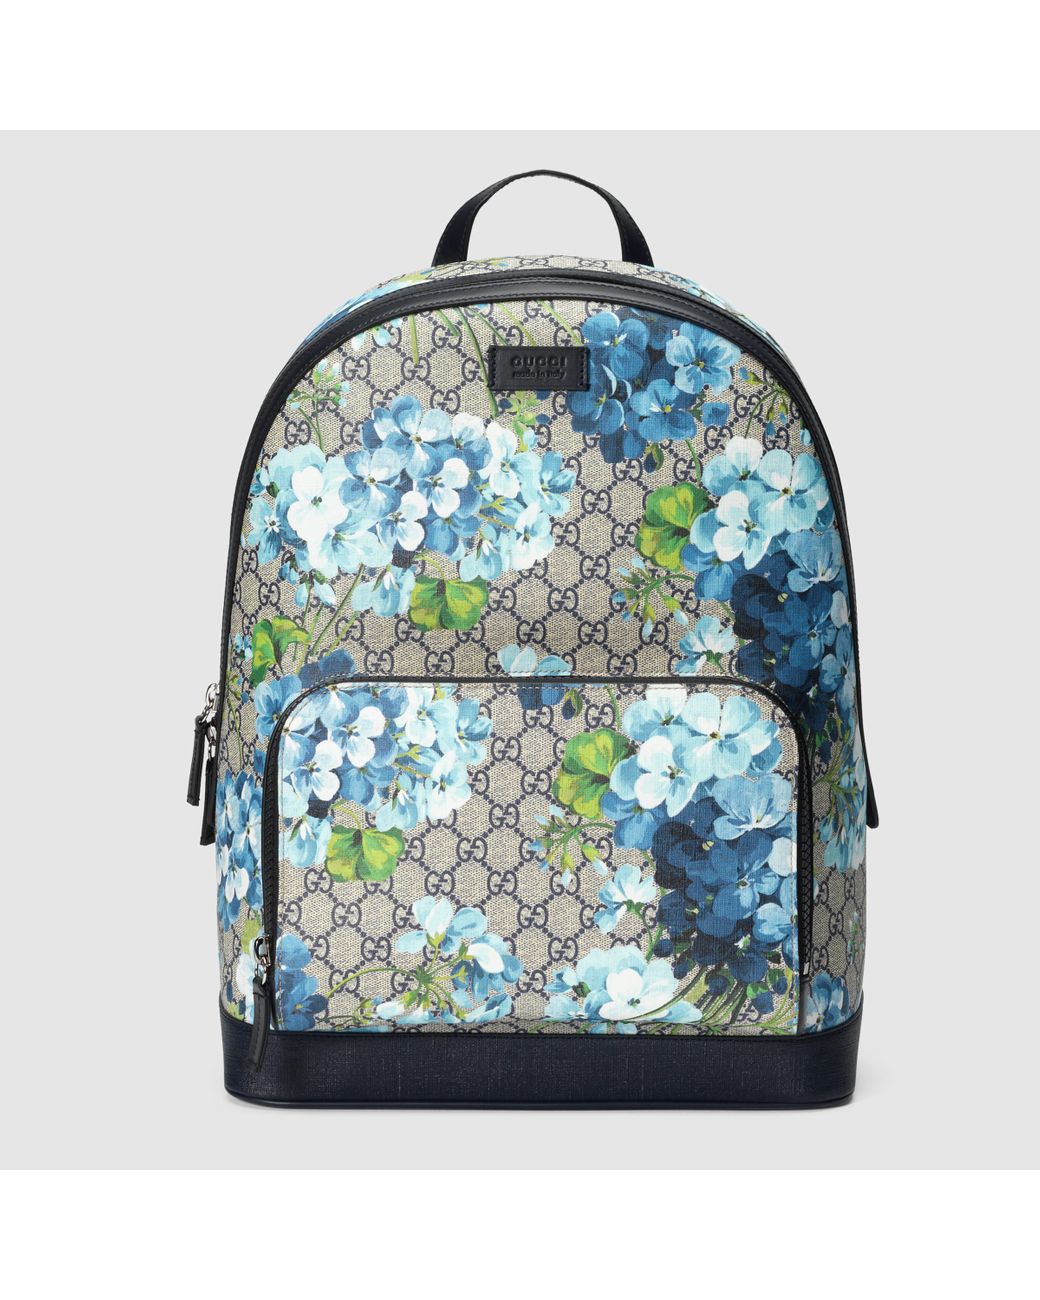 Samuel undervandsbåd basen Gucci Xl Gg Floral Print Backpack for Men | Lyst